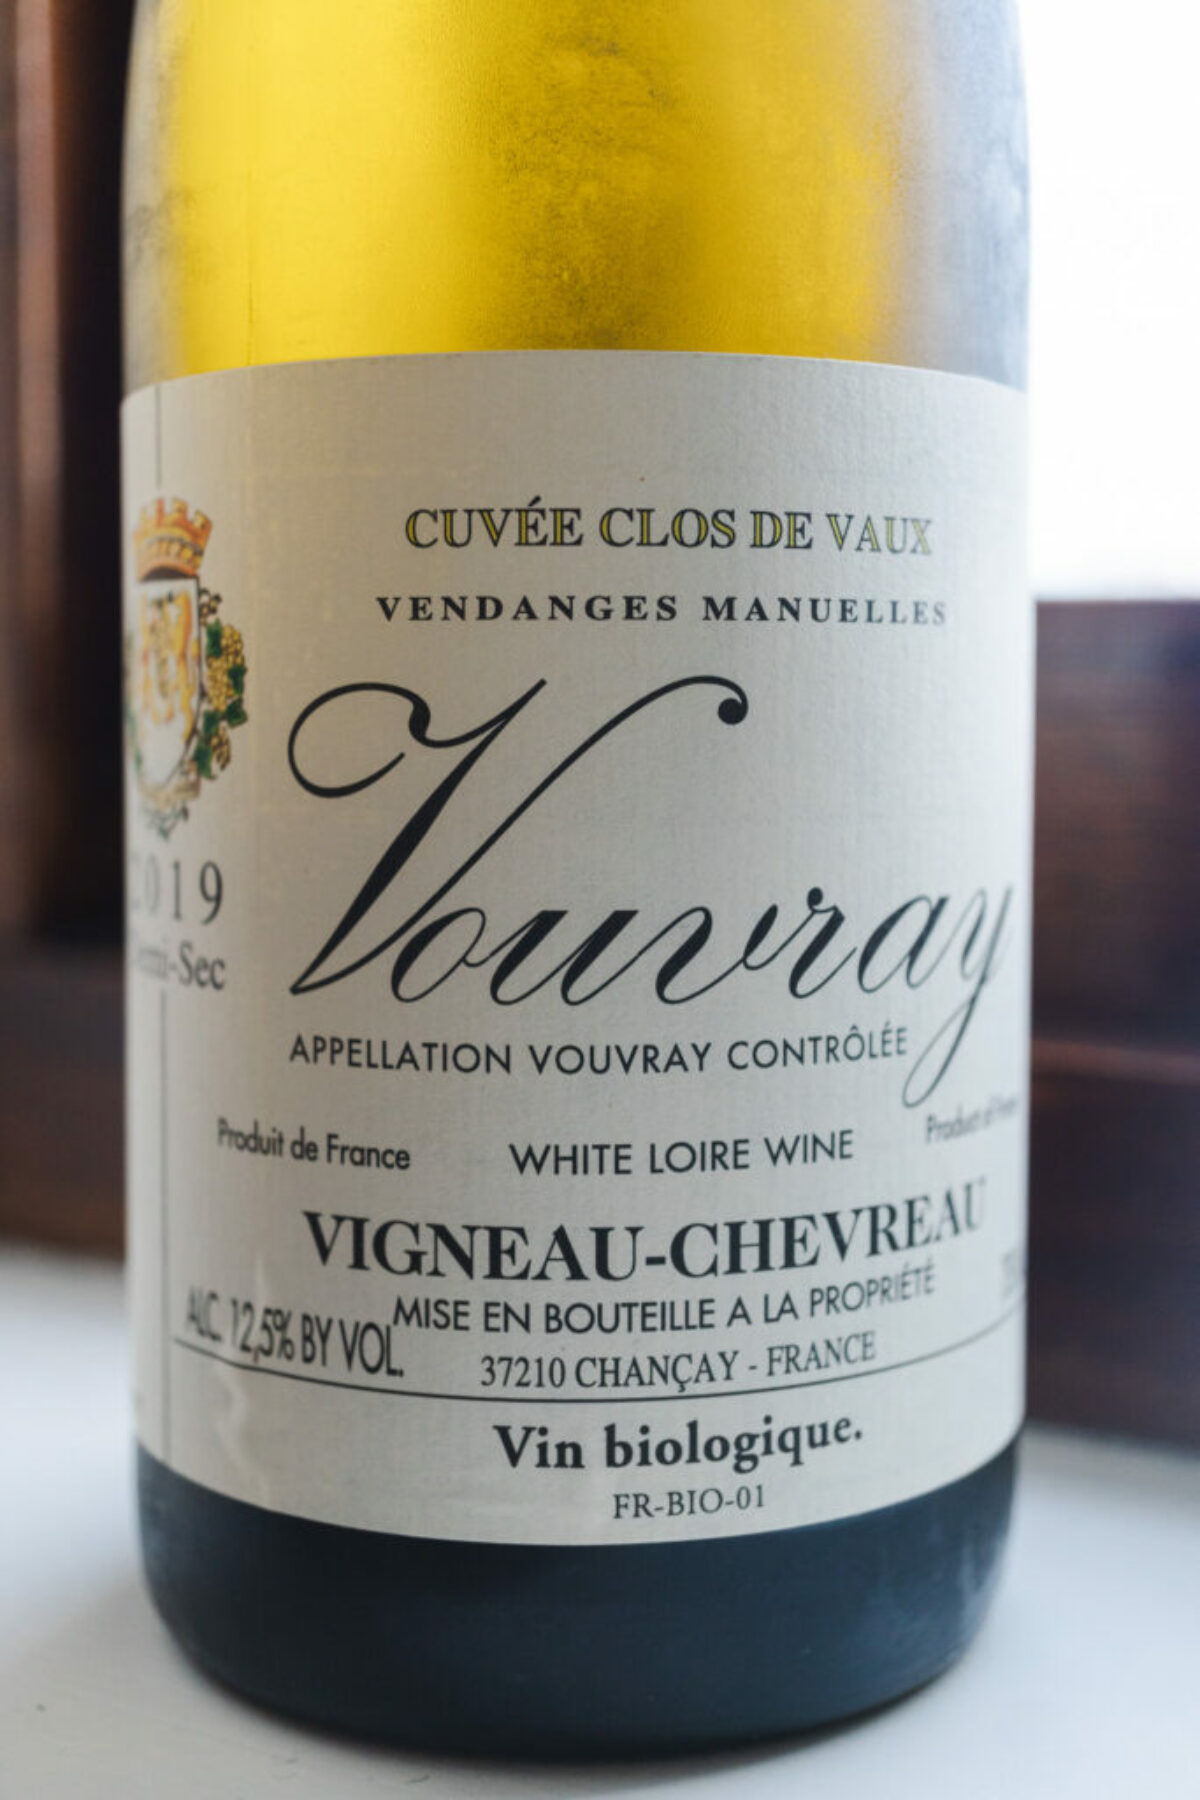 2019 Vouvray Cuvée Clos de Vaux Demi-Sec, Domaine Vigneau-Chevreau